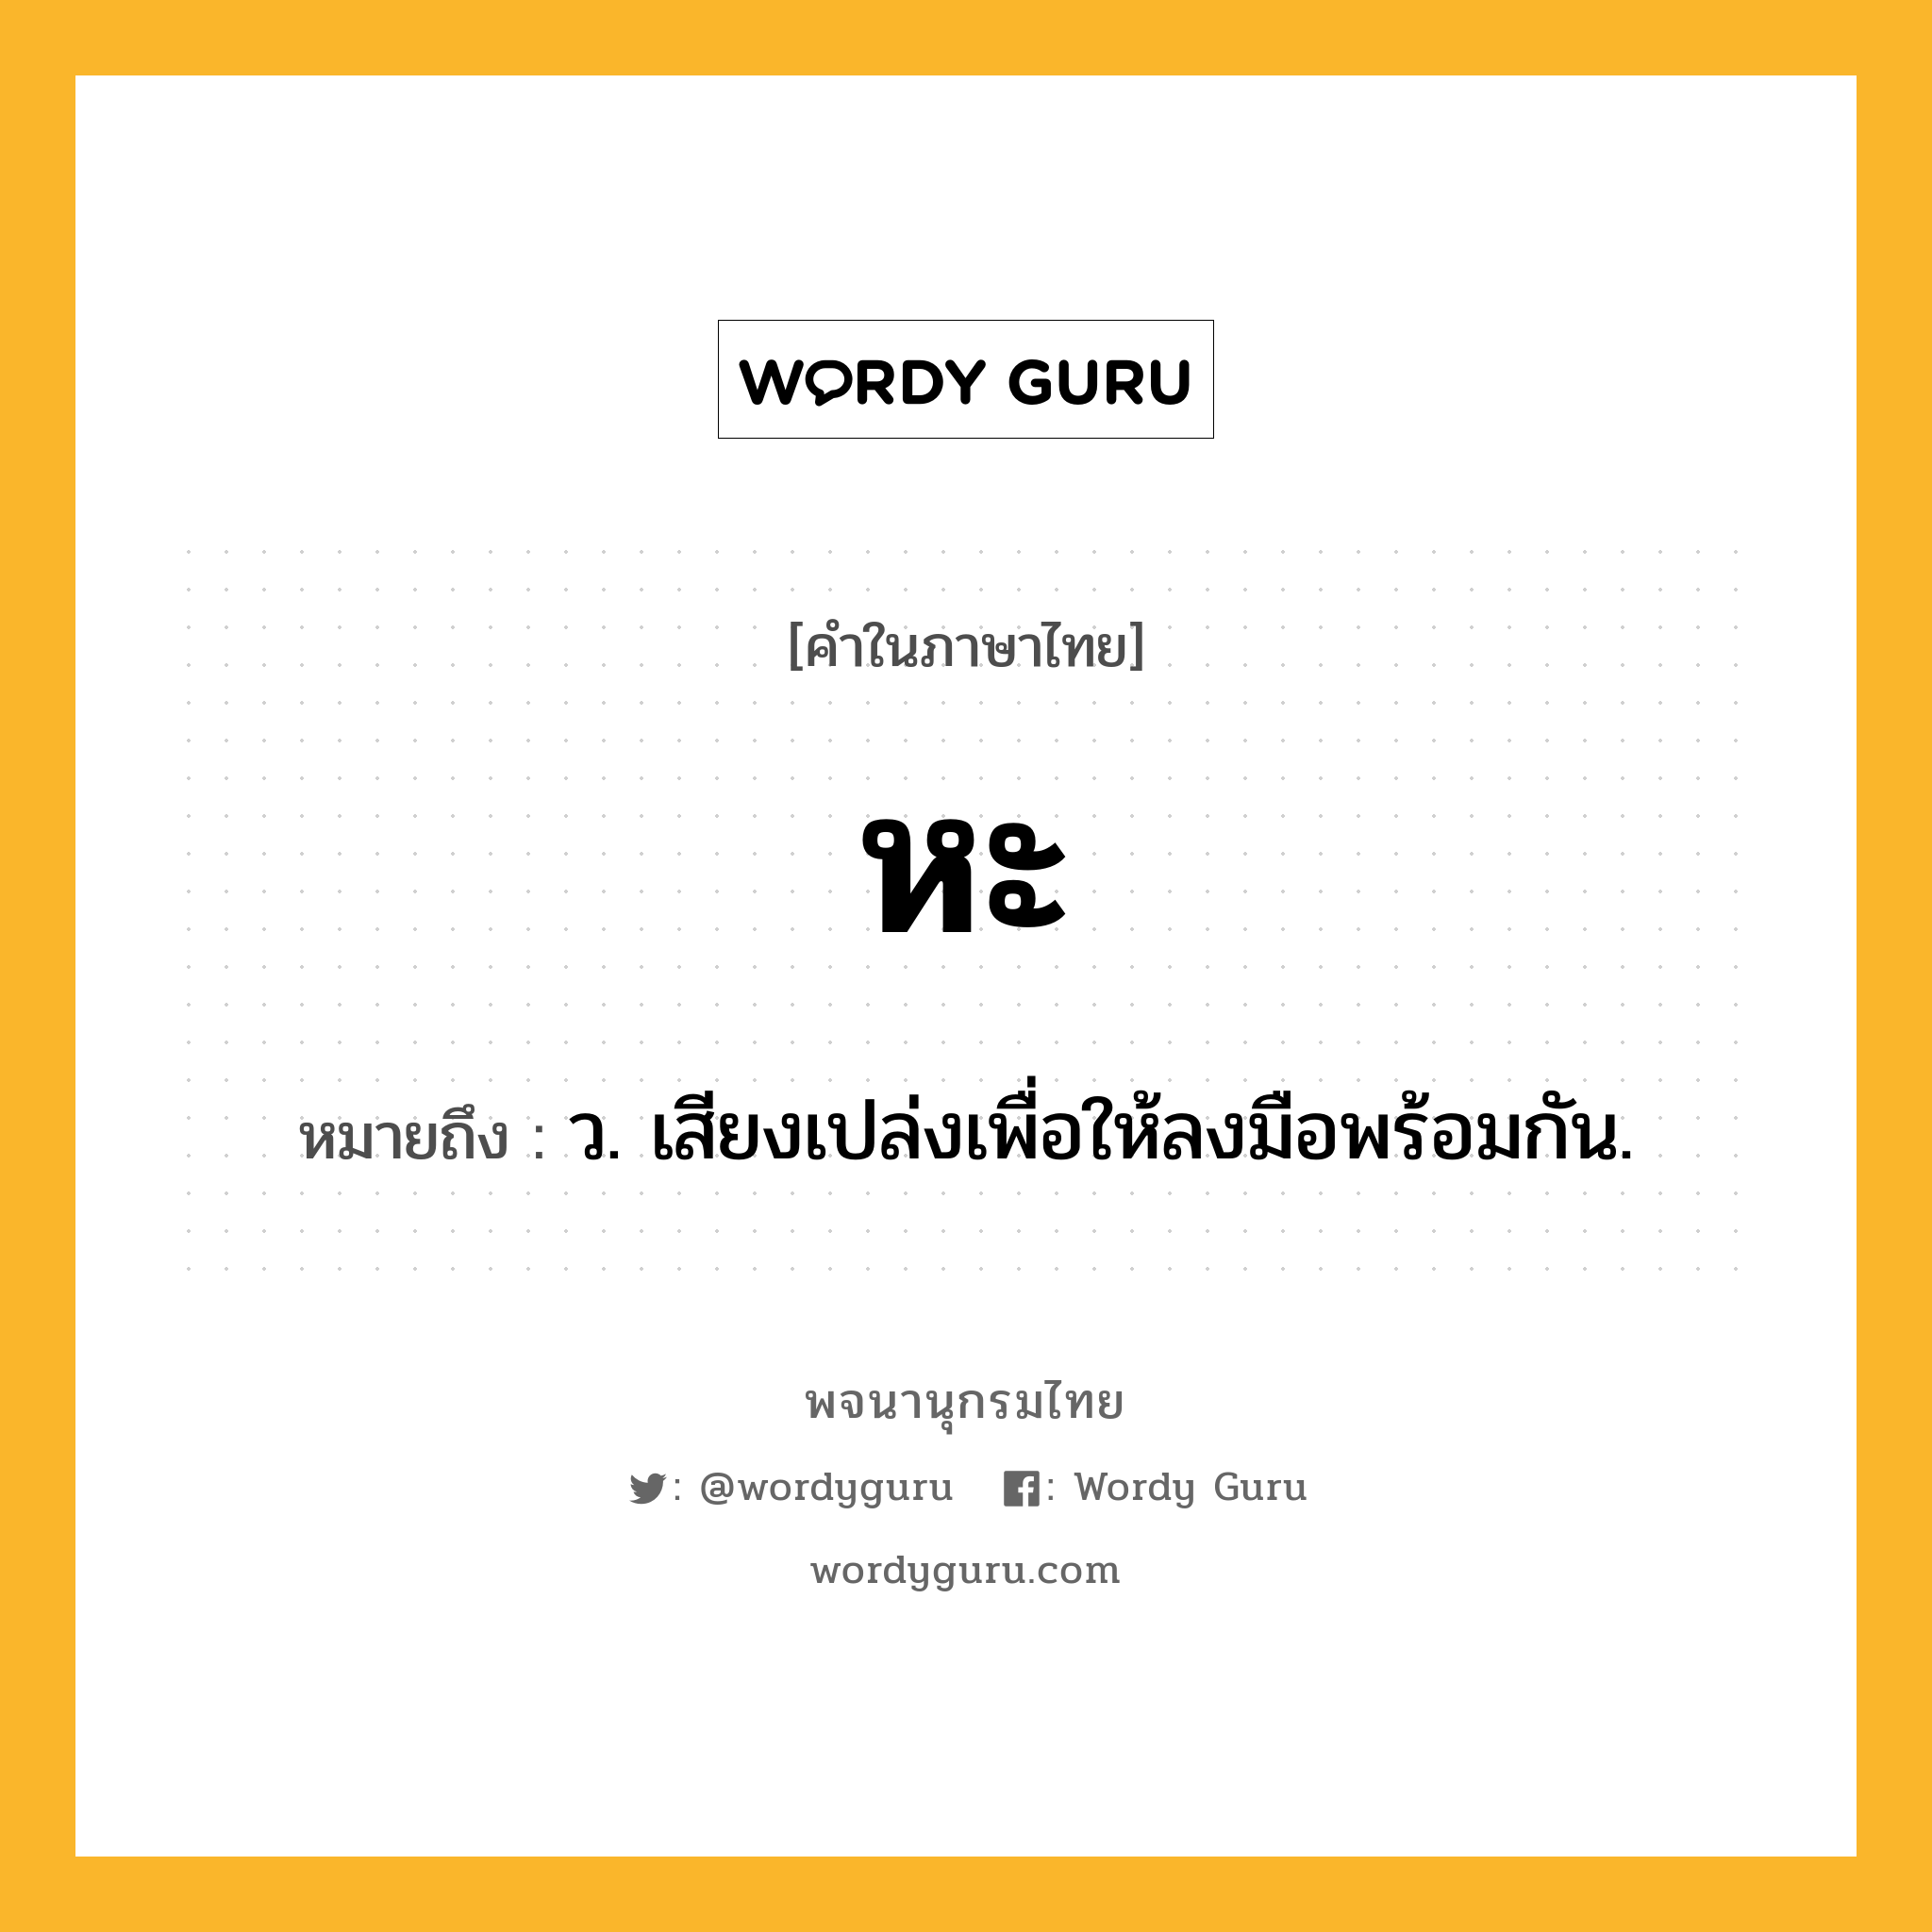 หะ ความหมาย หมายถึงอะไร?, คำในภาษาไทย หะ หมายถึง ว. เสียงเปล่งเพื่อให้ลงมือพร้อมกัน.